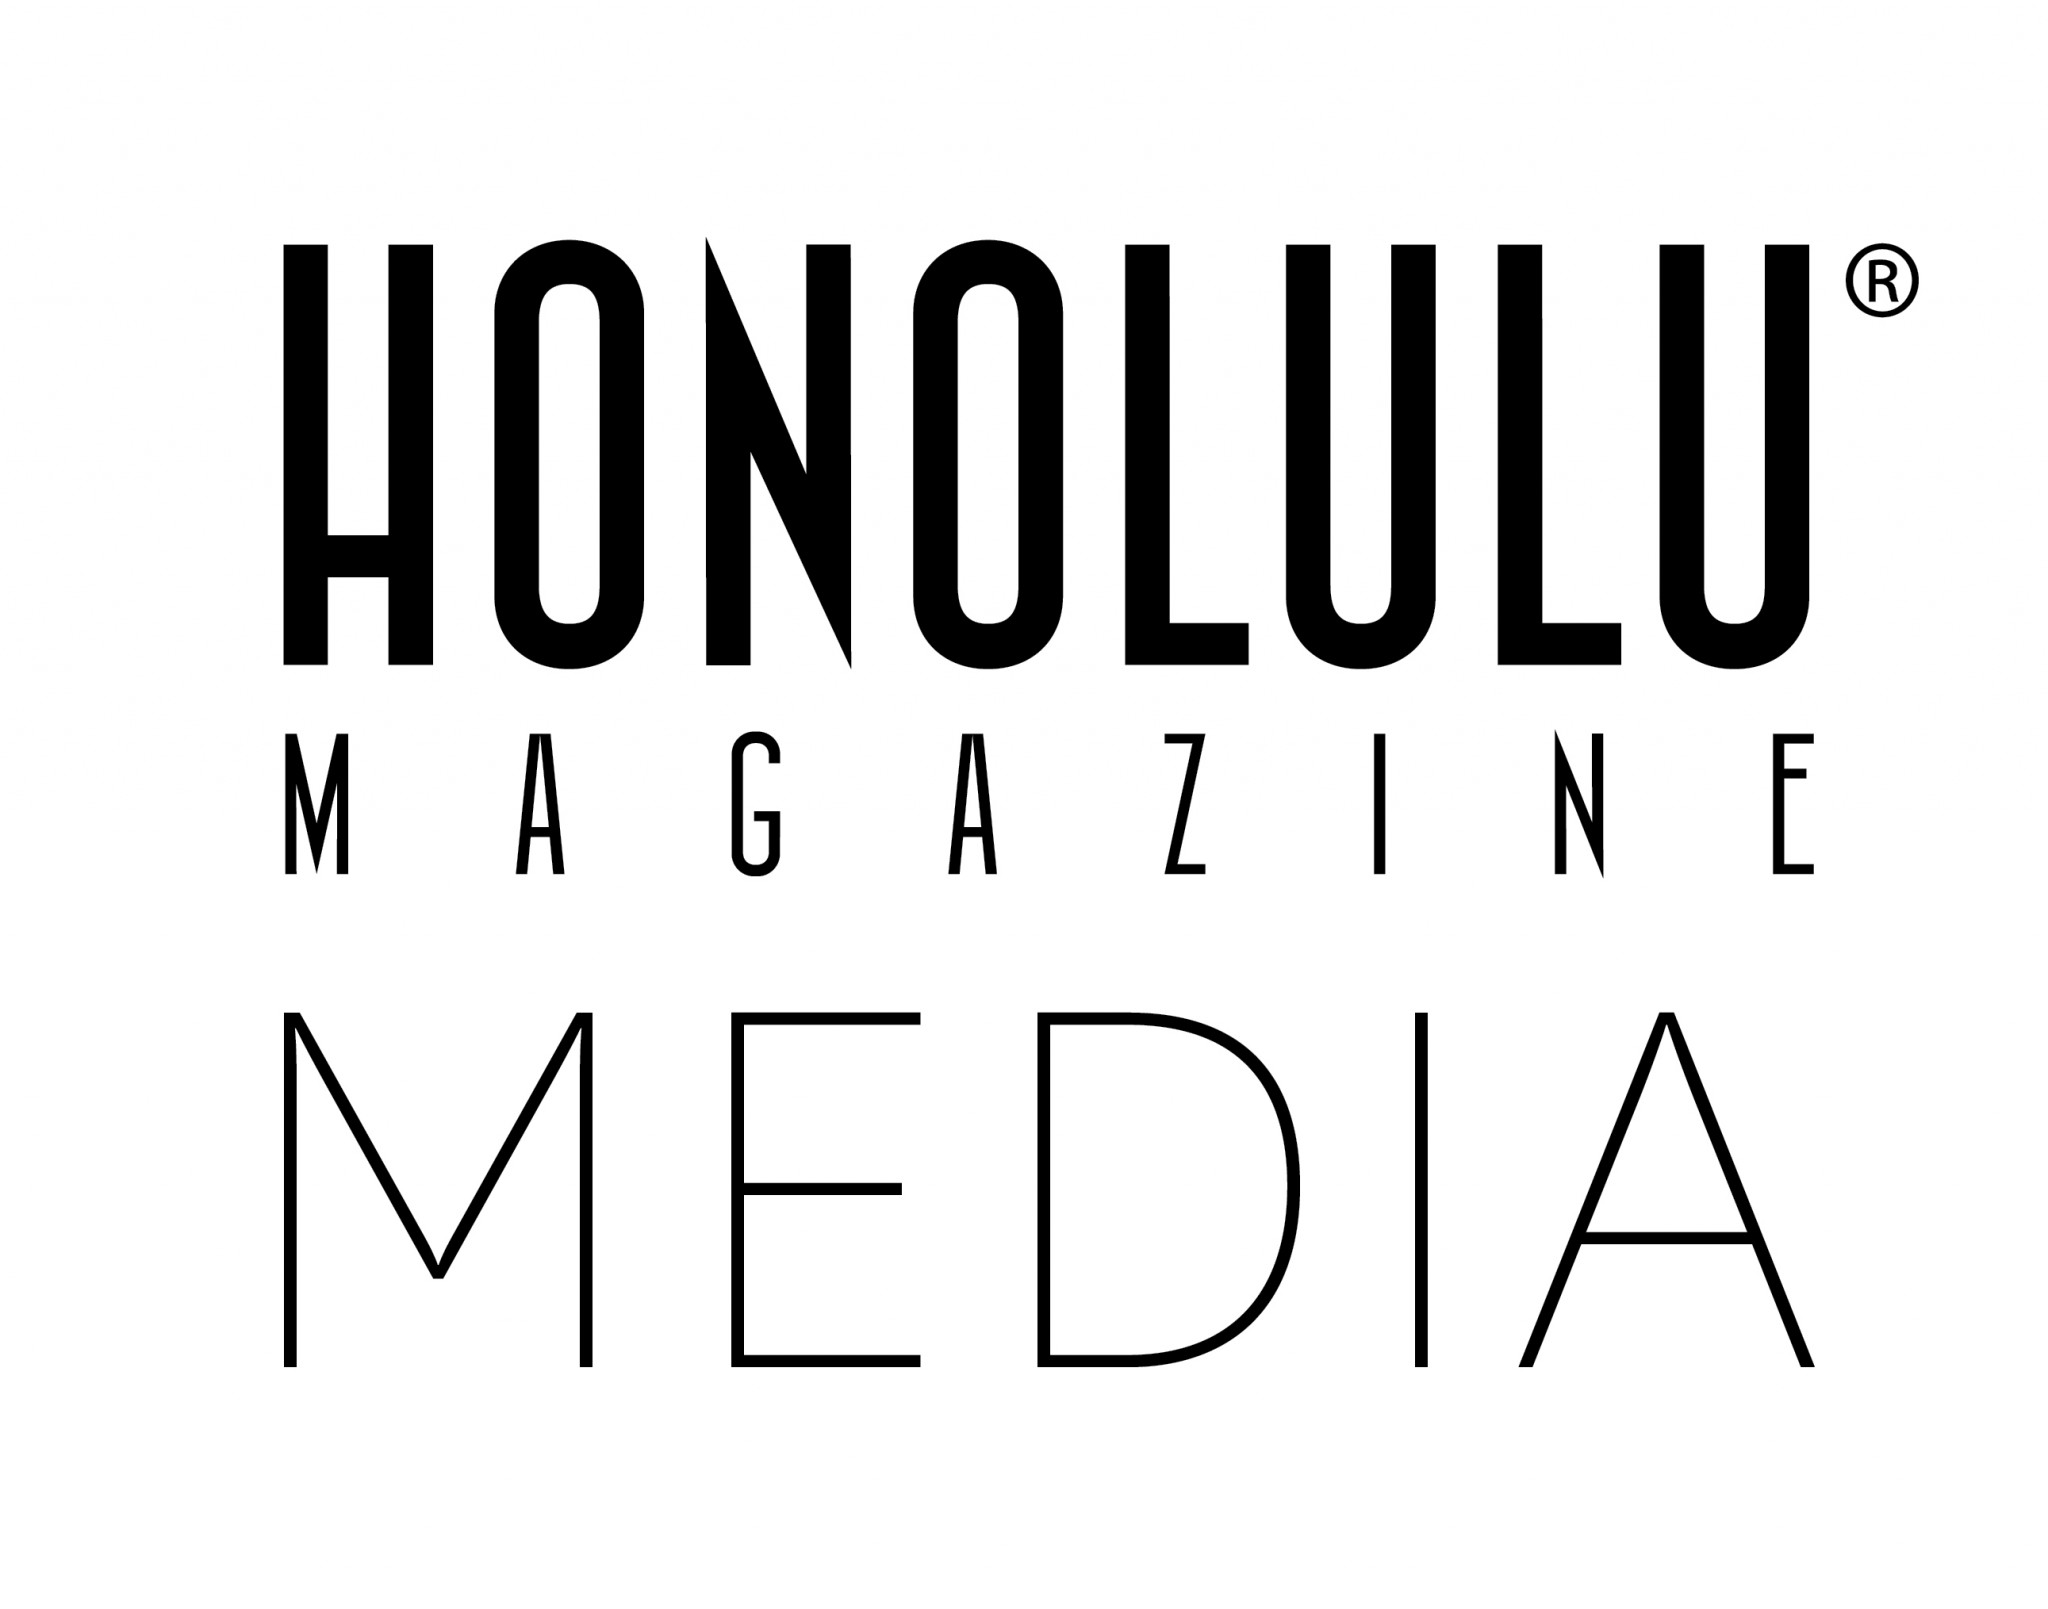 HONOLULU Brand Media Kit Honolulu Magazine